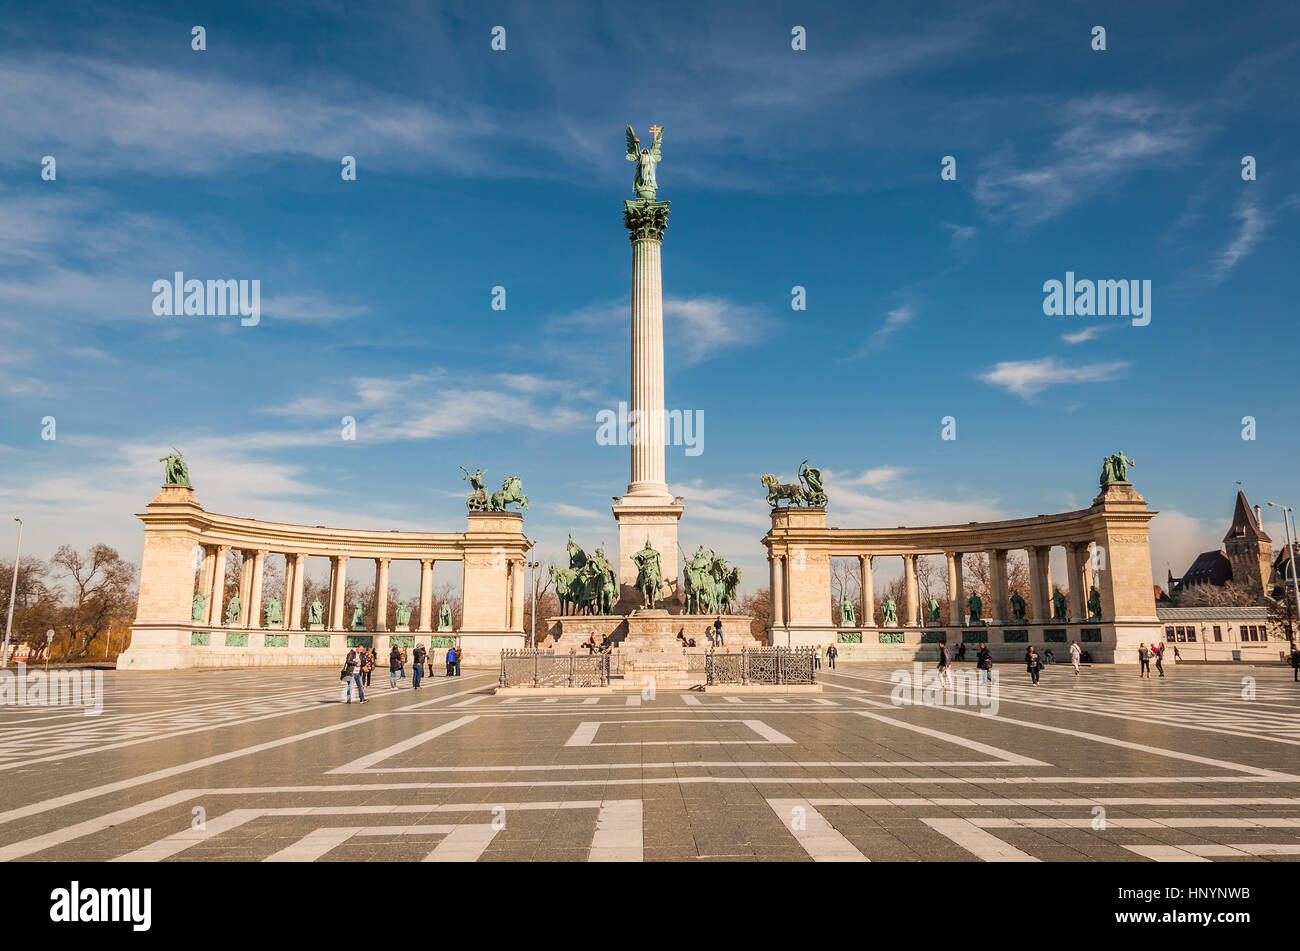 BUDAPEST, Ungarn - 22. Februar 2016: Milleniumsdenkmal auf dem Heldenplatz Square oder Hosok Tere gehört zu den wichtigsten Plätzen in Budapest, Ungarn. Stockfoto